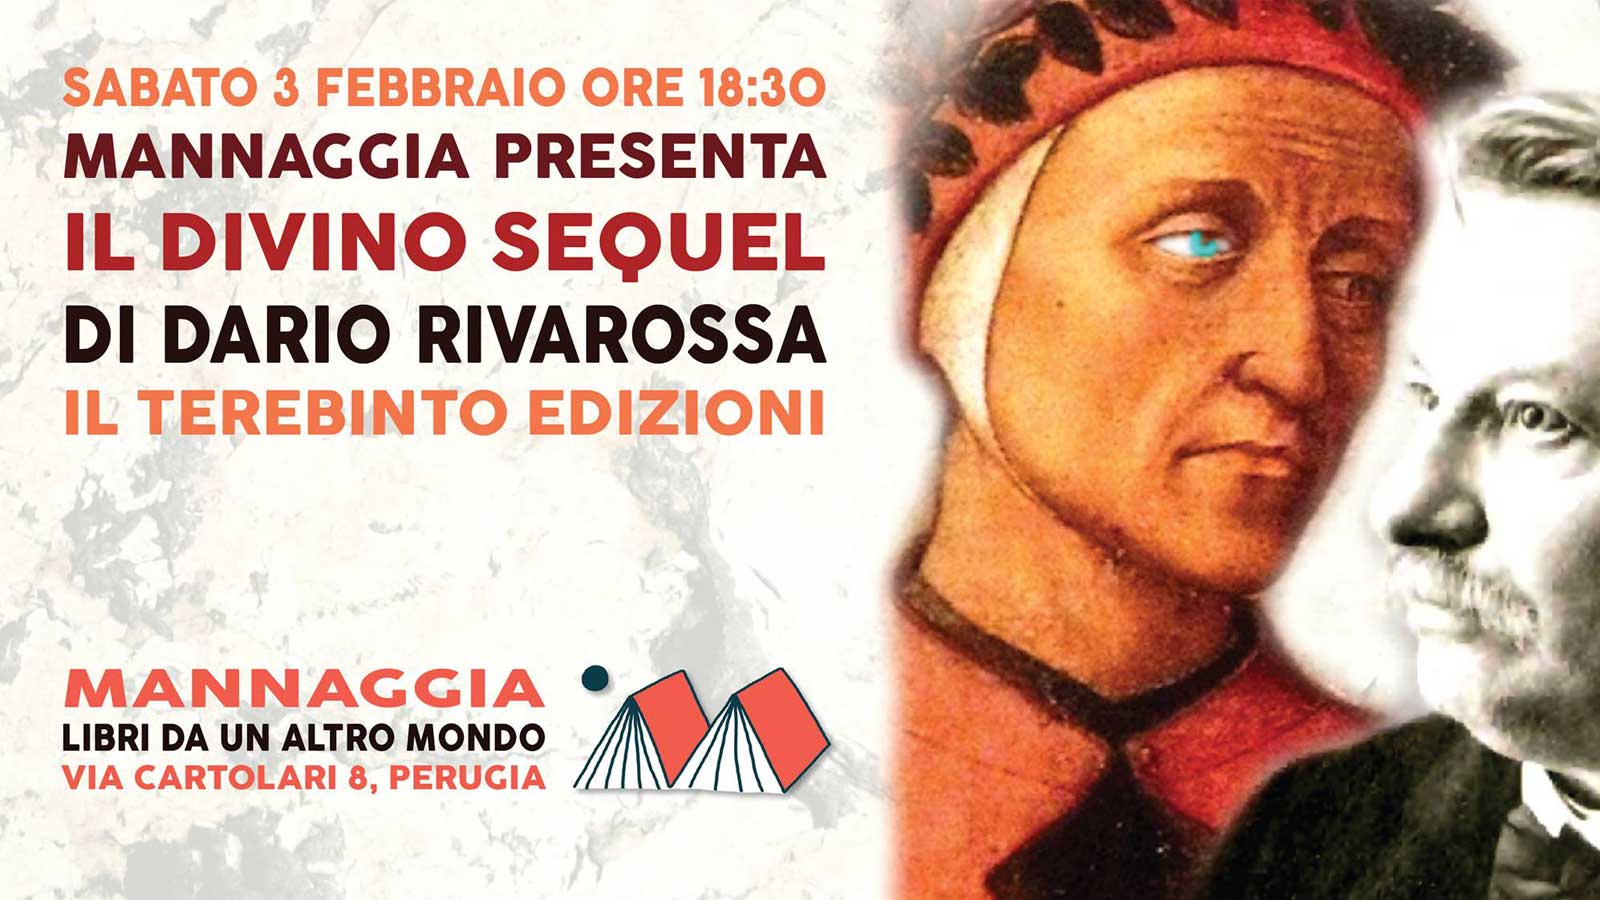 Mannaggia presenta "Il divino sequel" di Dario Rivarossa